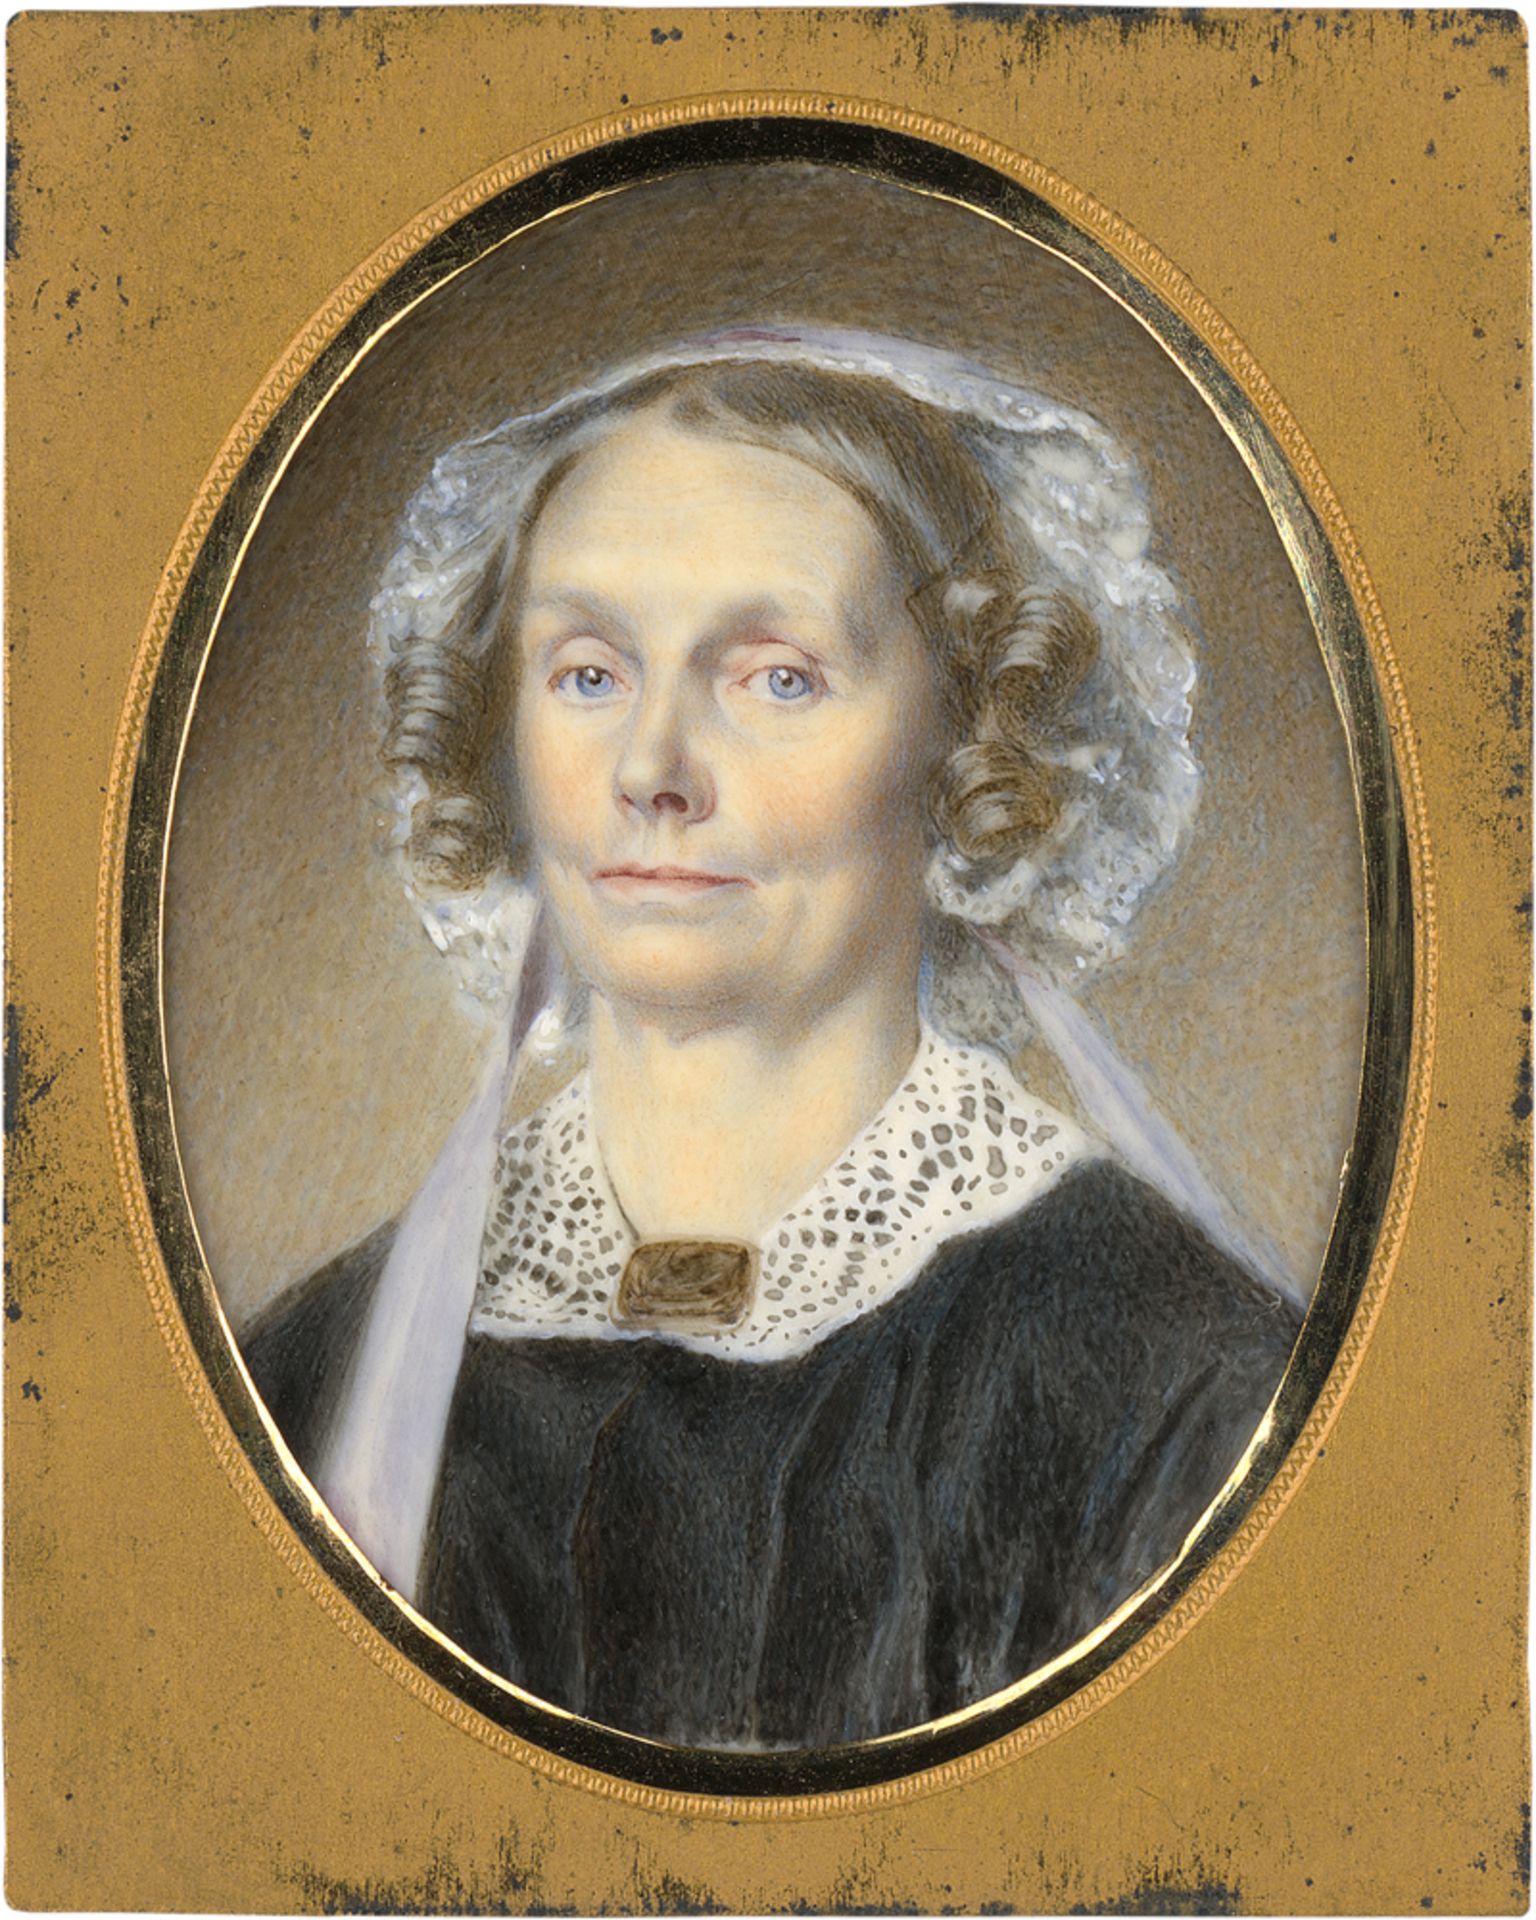 Britisch oder Nordamerikanisch: um 1840. Miniatur Portrait einer Frau mit blauem Band un...